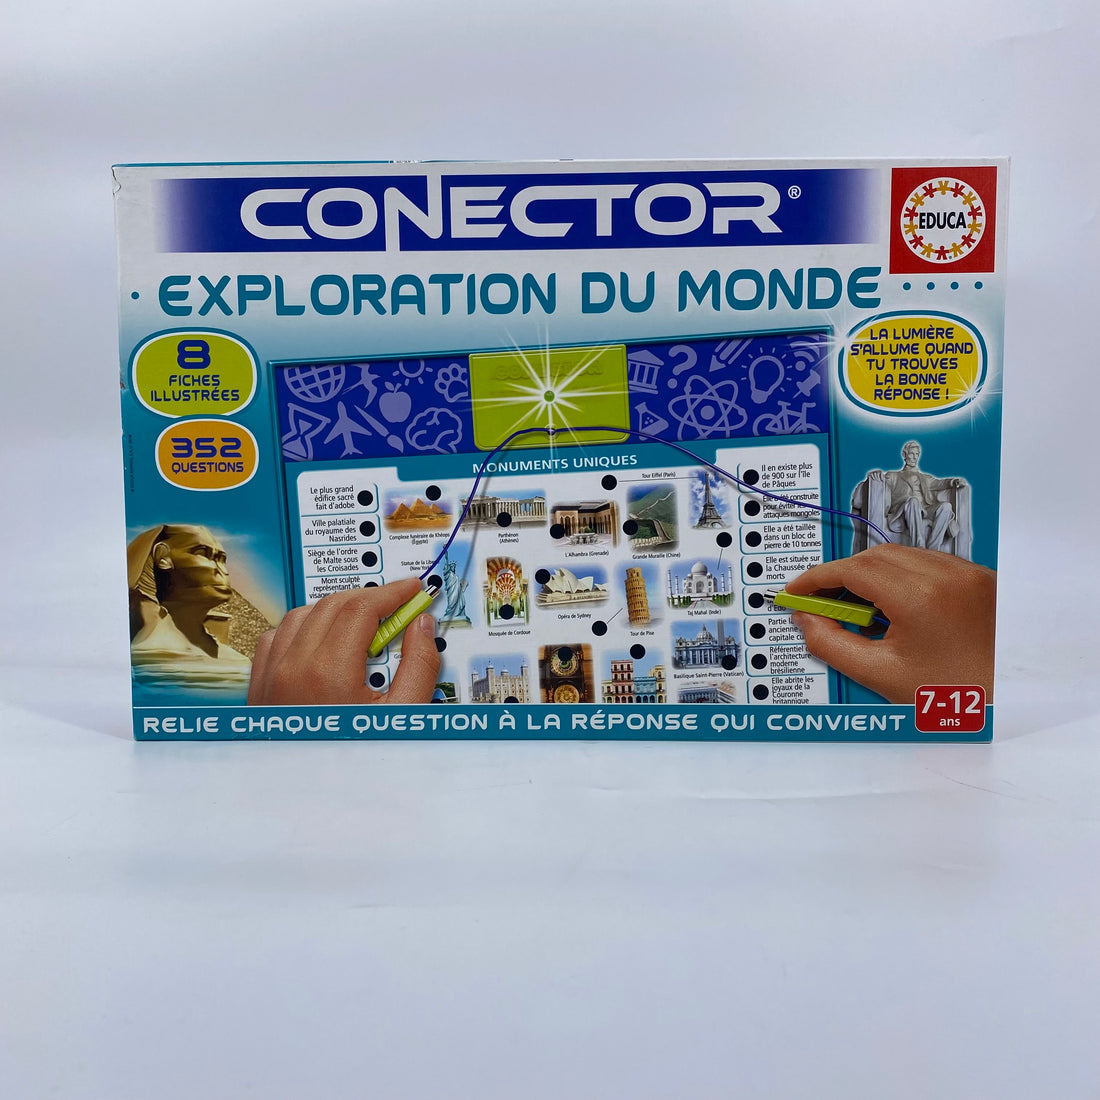 Conector, exploration du monde